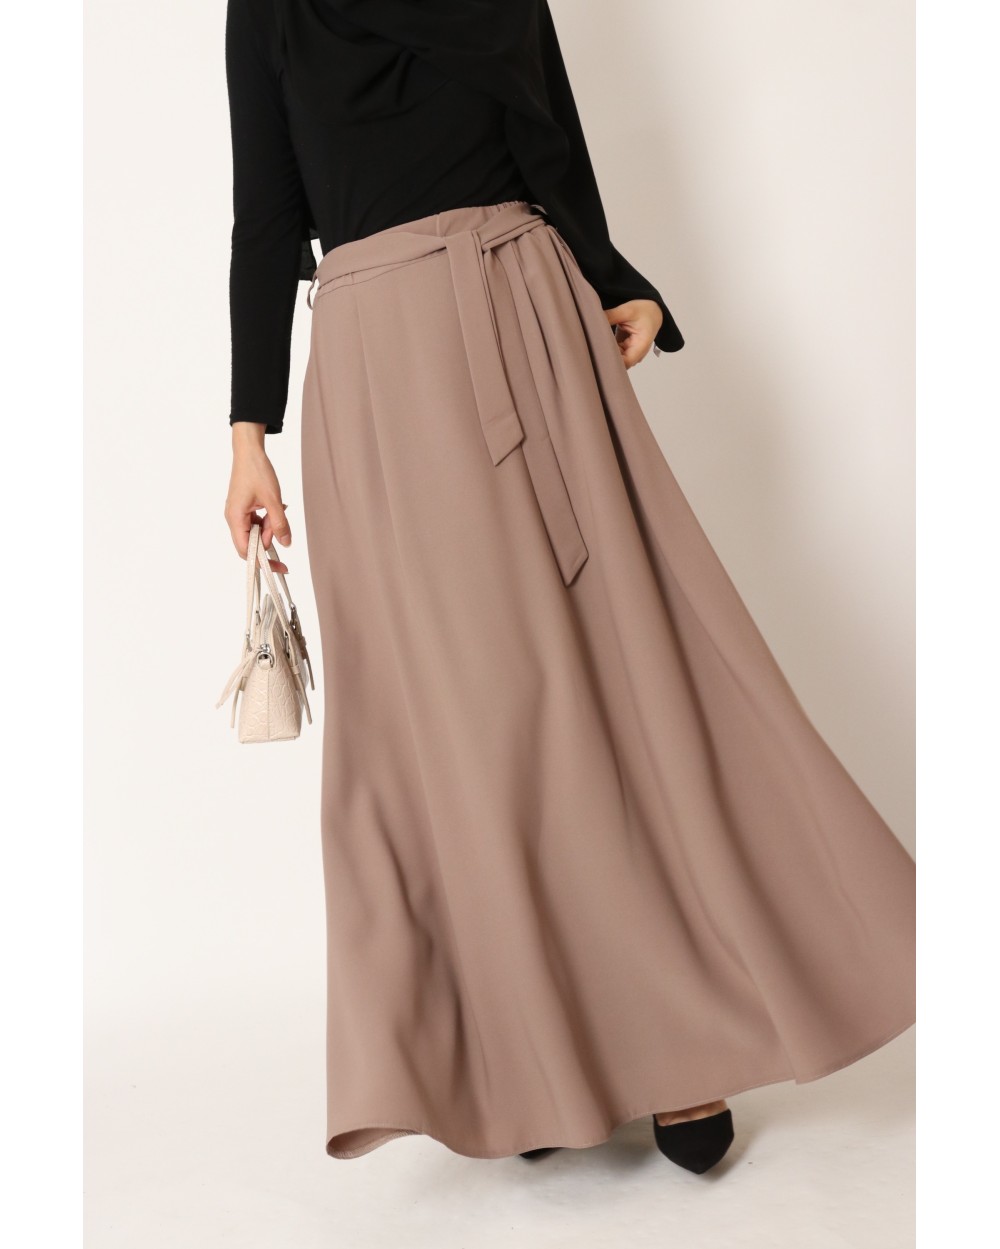 Long flared skirt